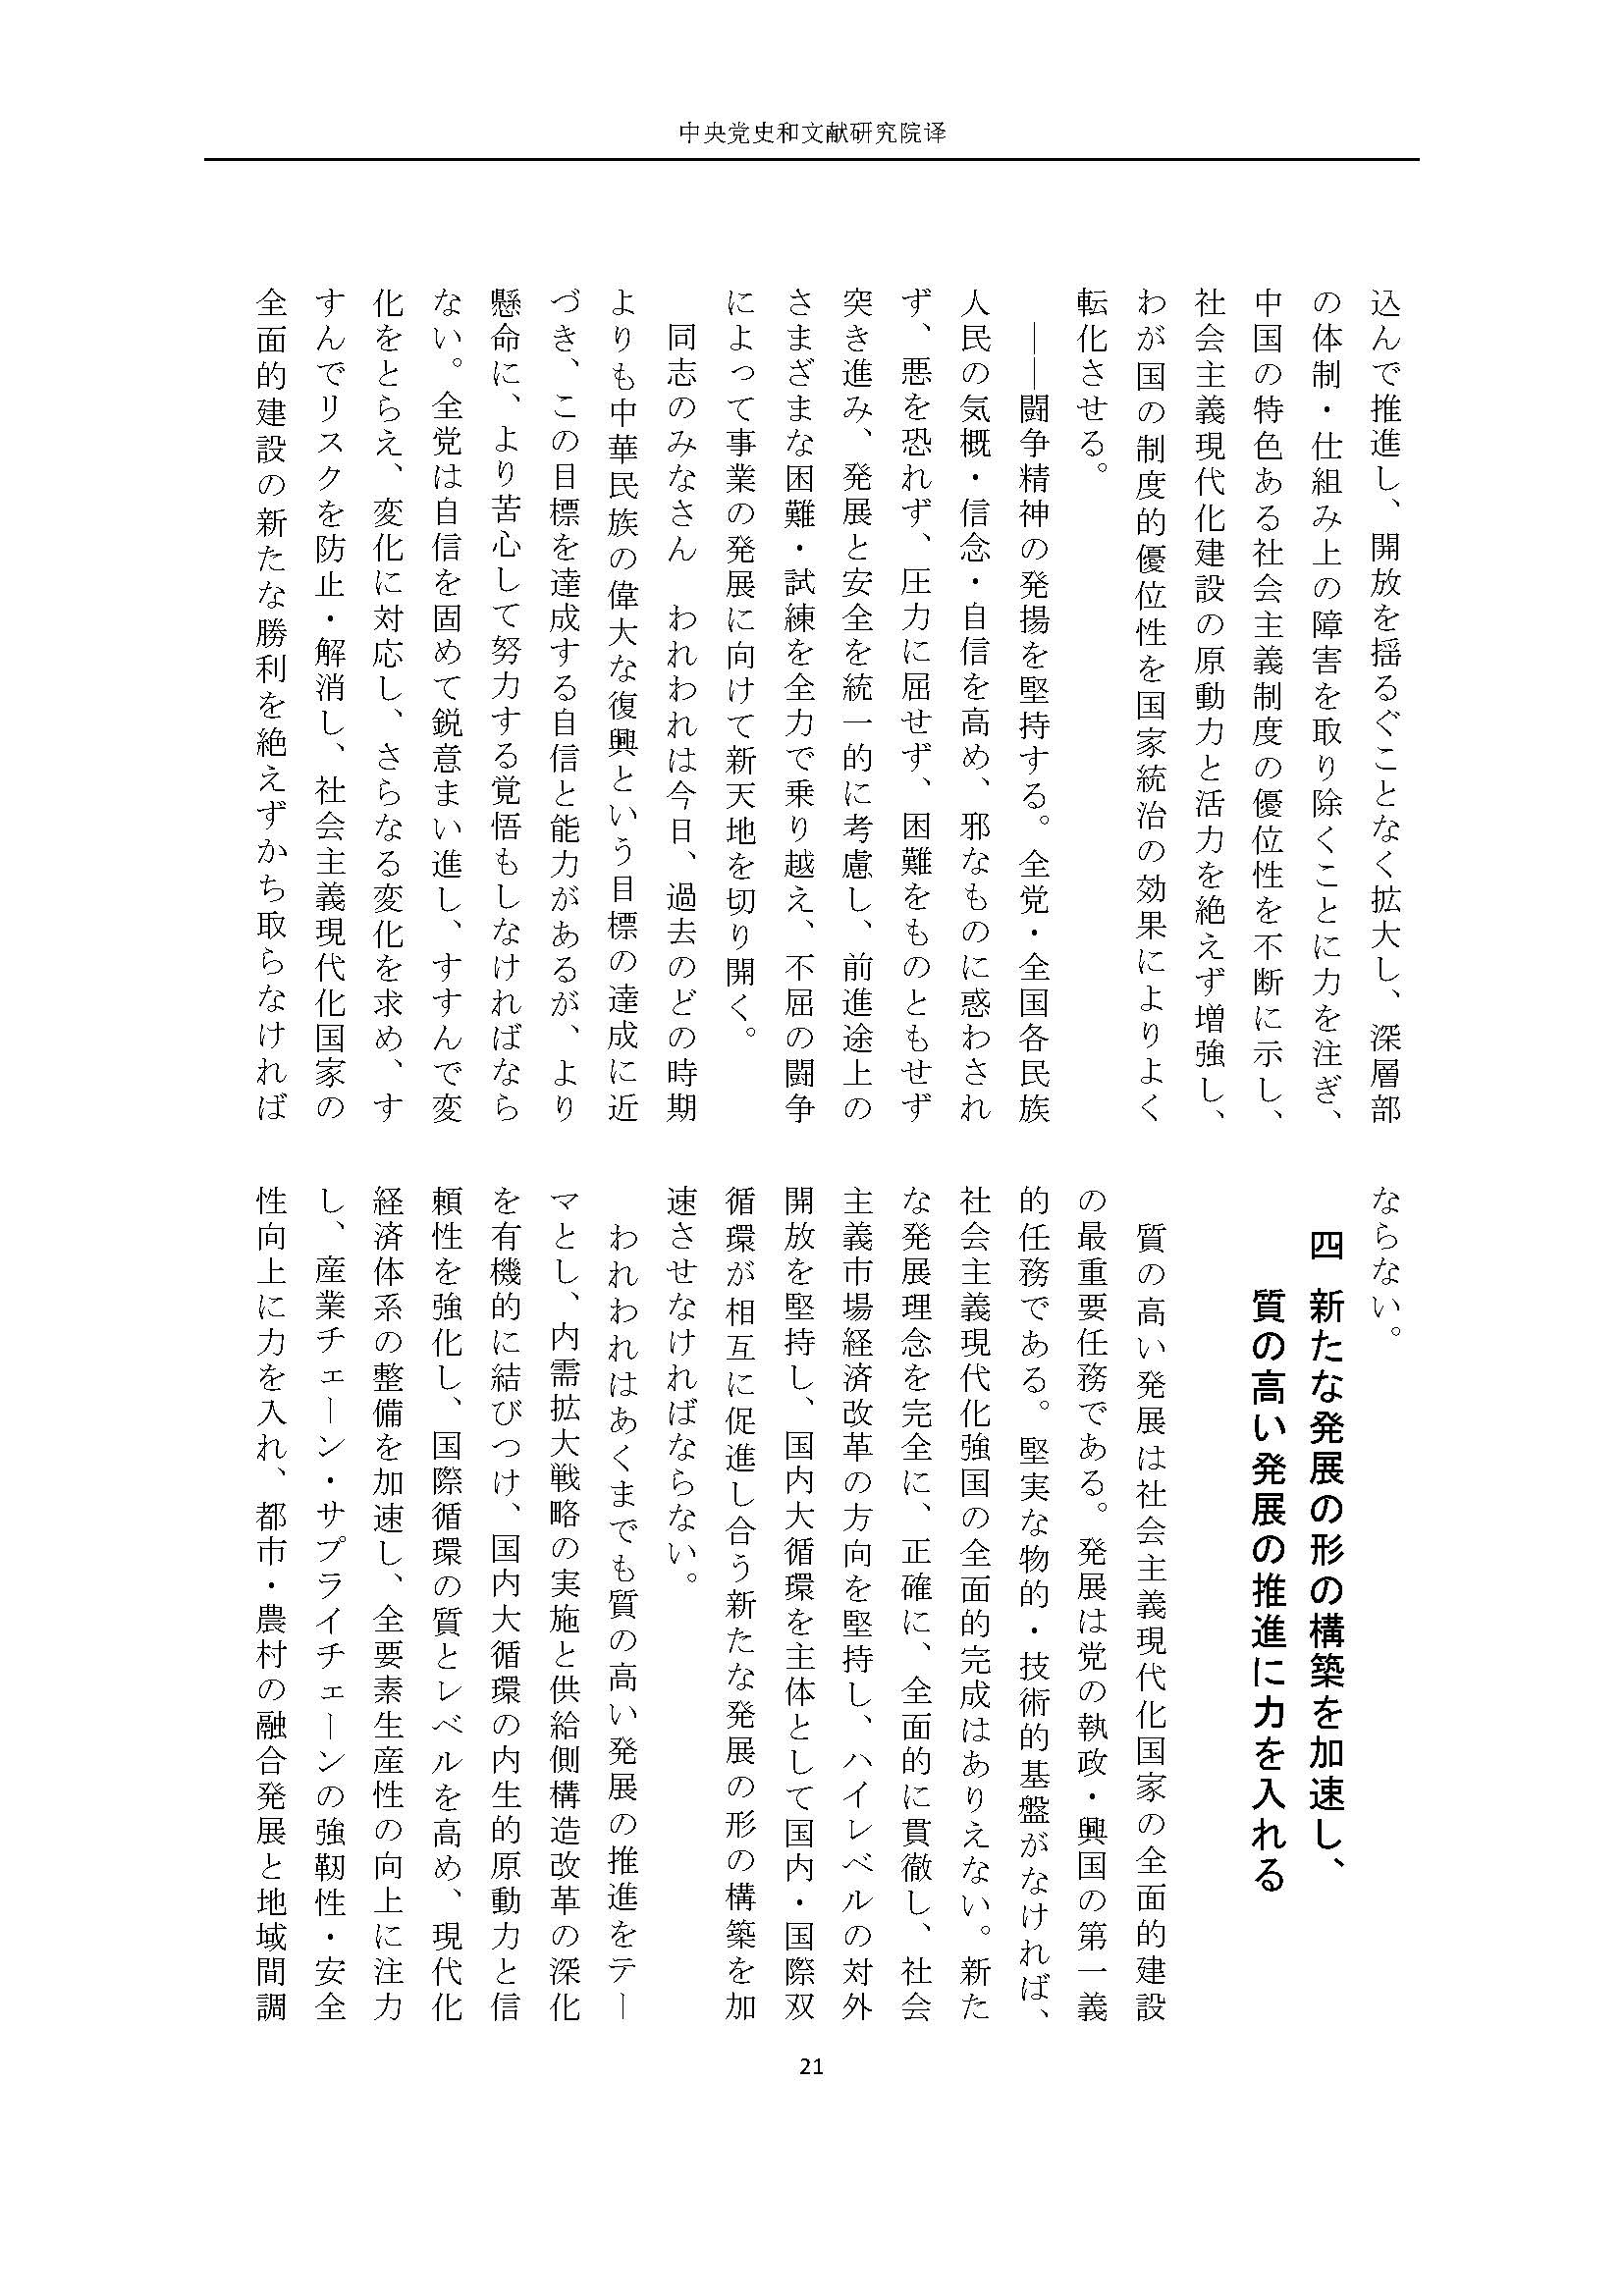 二十大报告（日文全文）_页面_22